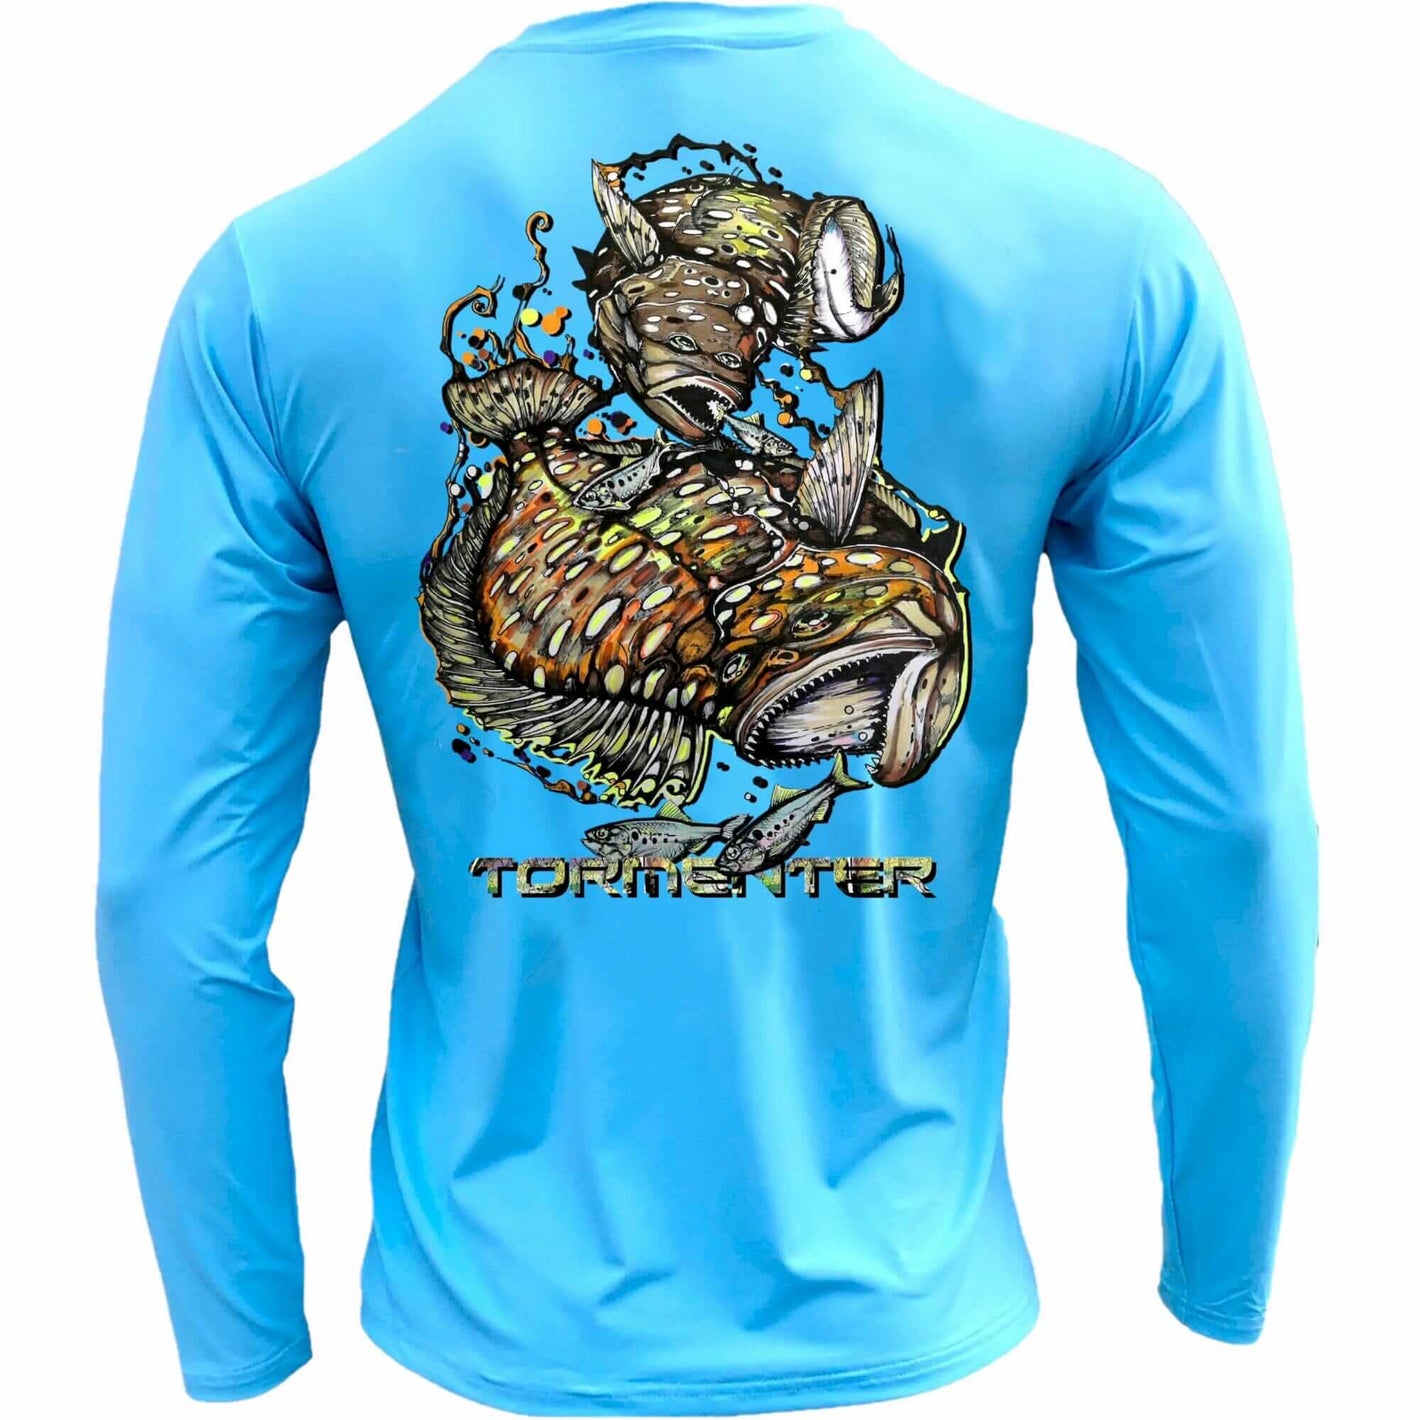 Men's Performance Shirt- Flounder Men's SPF Ocean Fishing Tops Tormenter Ocean Blue S 